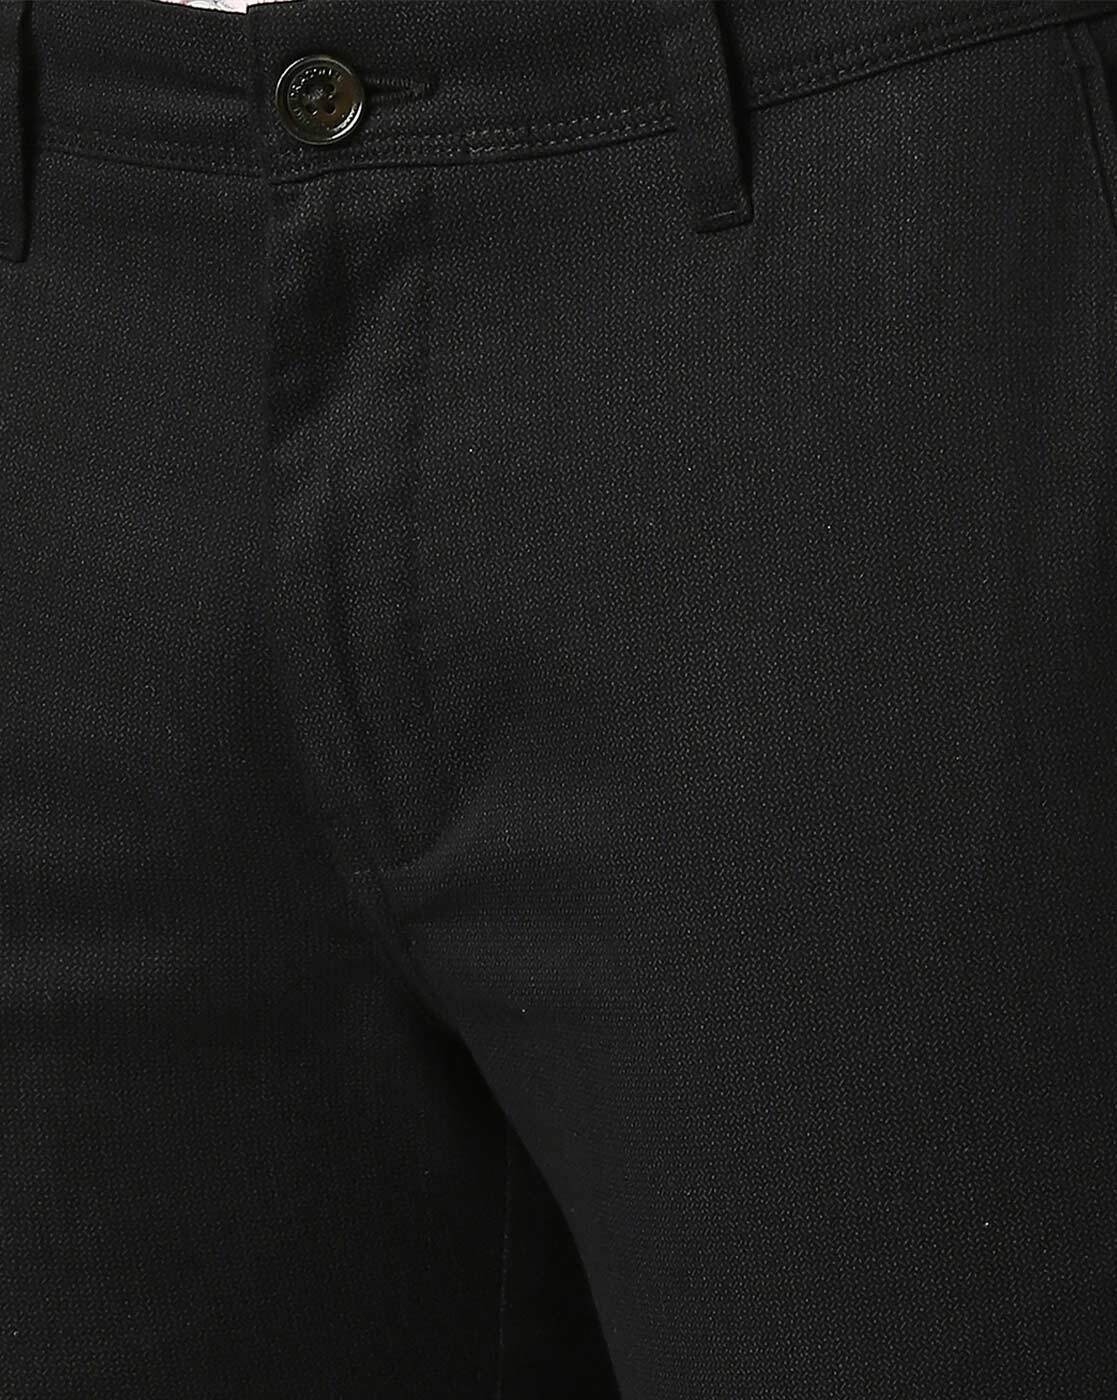 Smart Jean Trouser For Men - Black | Konga Online Shopping